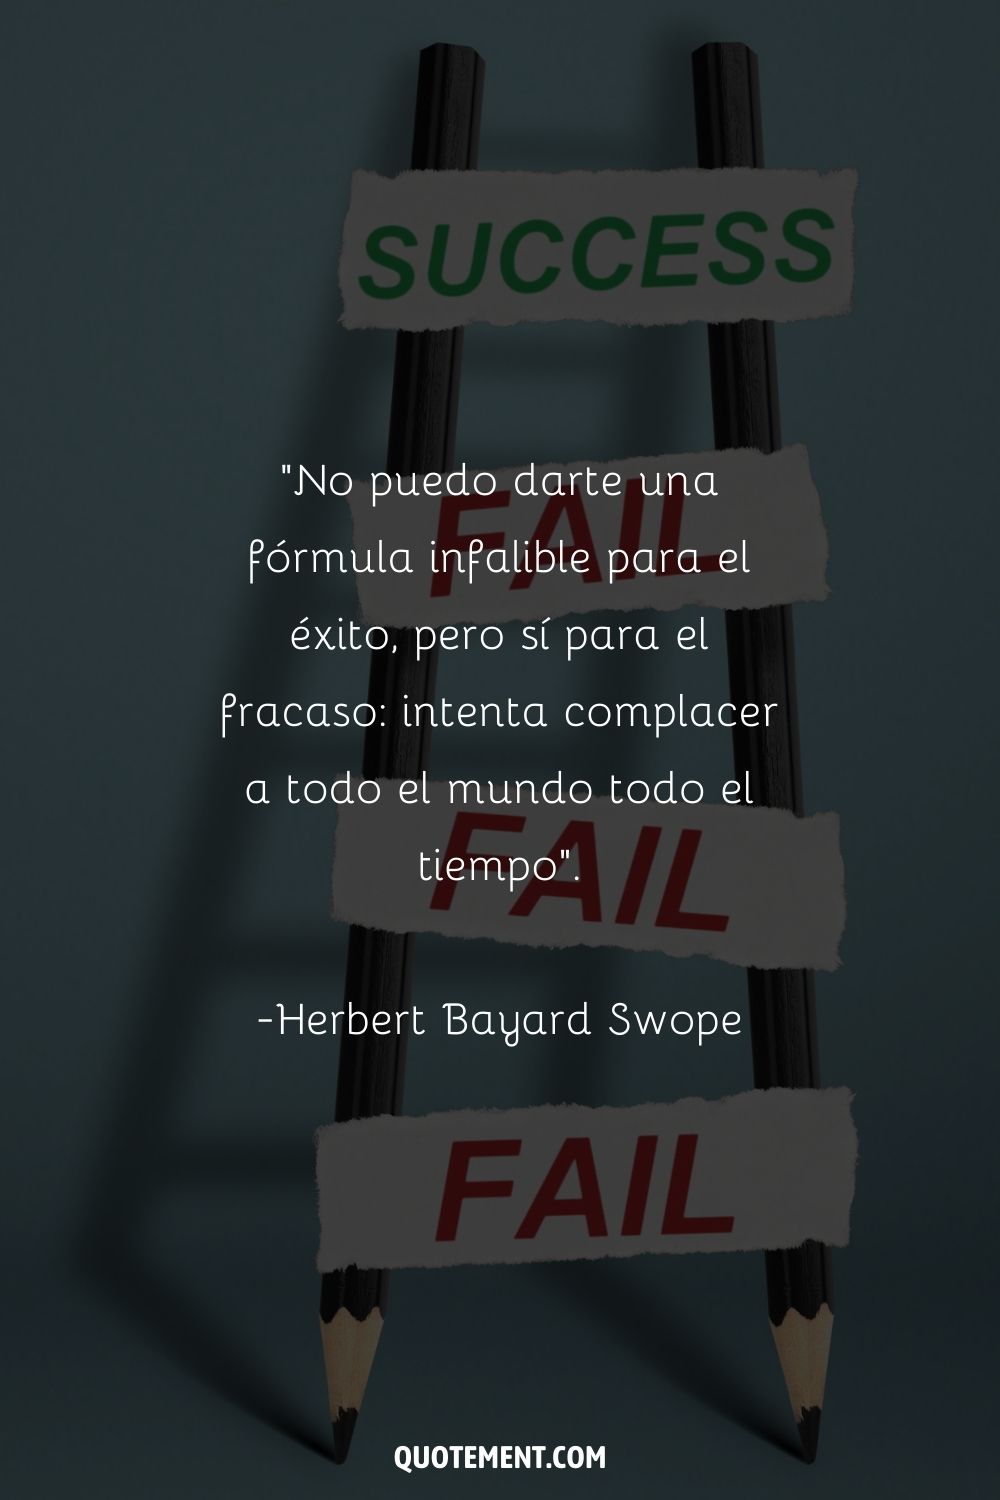 "No puedo darte una fórmula infalible para el éxito, pero sí puedo darte una fórmula para el fracaso: intentar complacer a todo el mundo todo el tiempo". - Herbert Bayard Swope